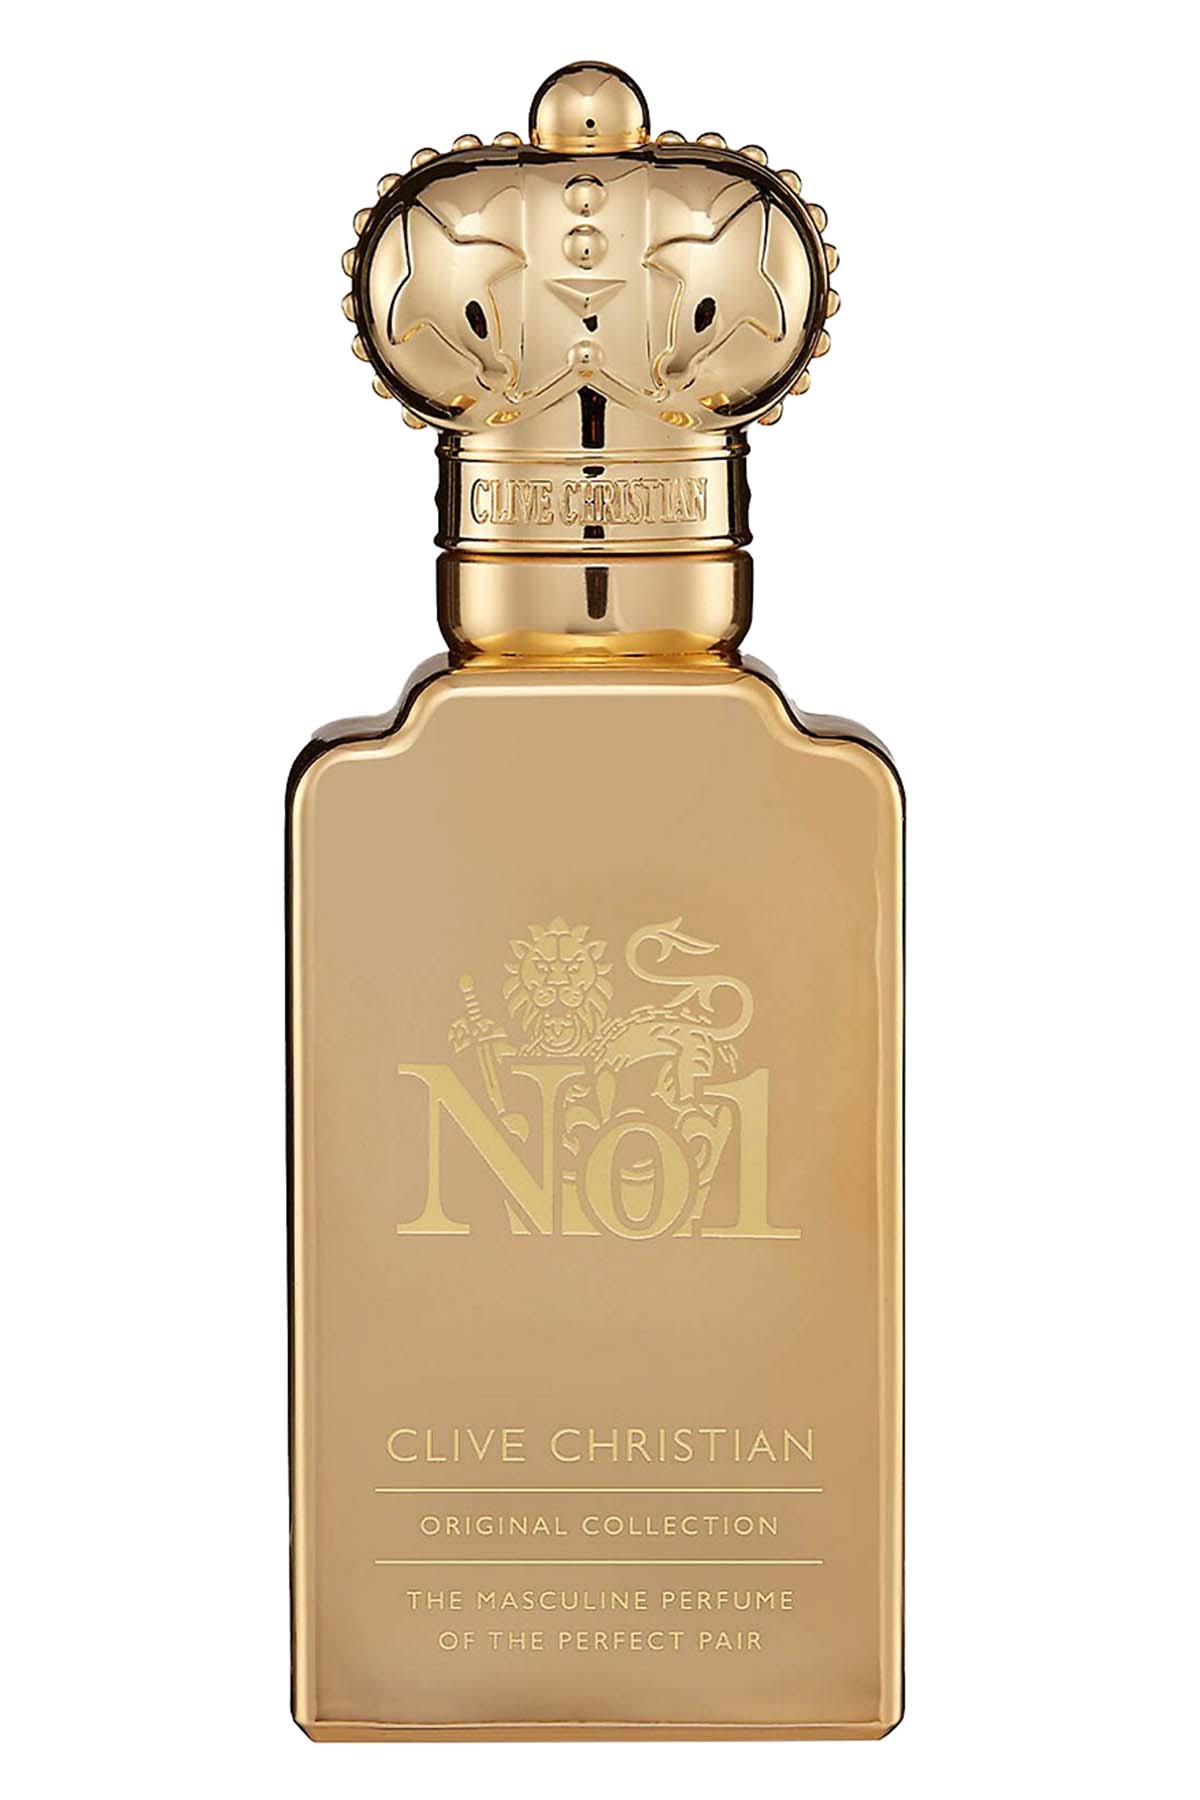 Clive Christian No1 Masculine Edition Eau de Parfum